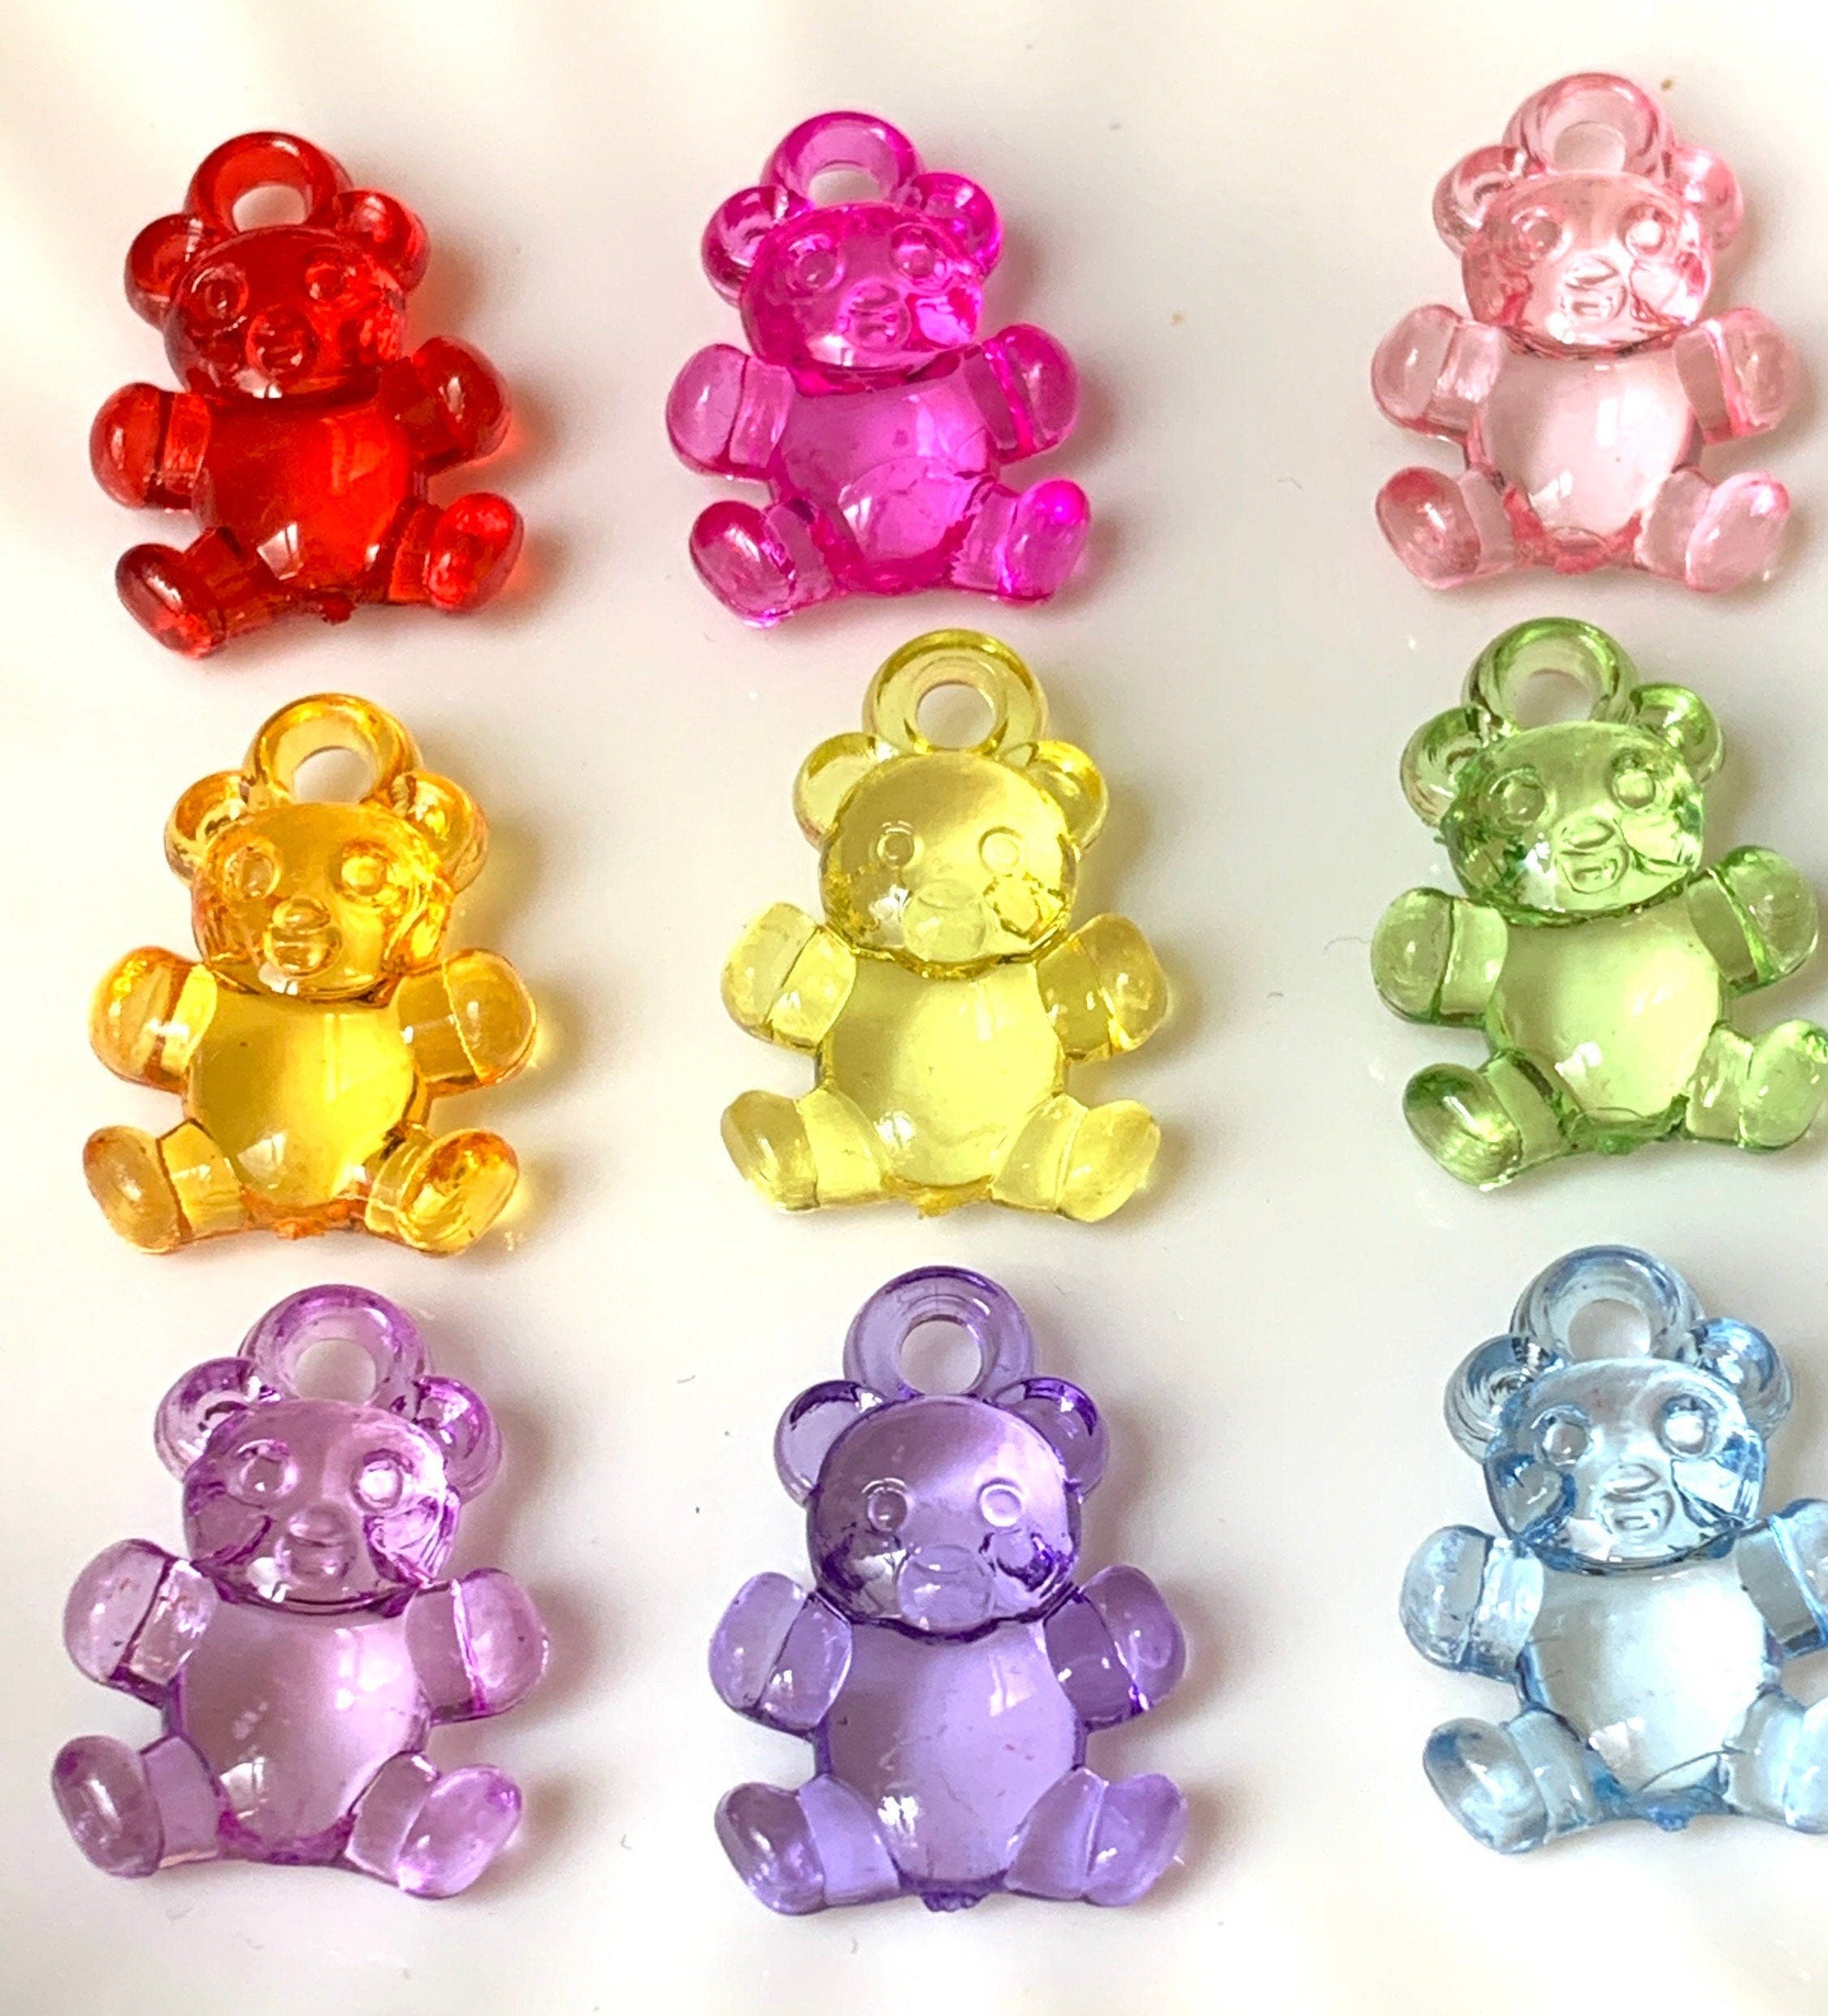 20 Gummy Bear Charms